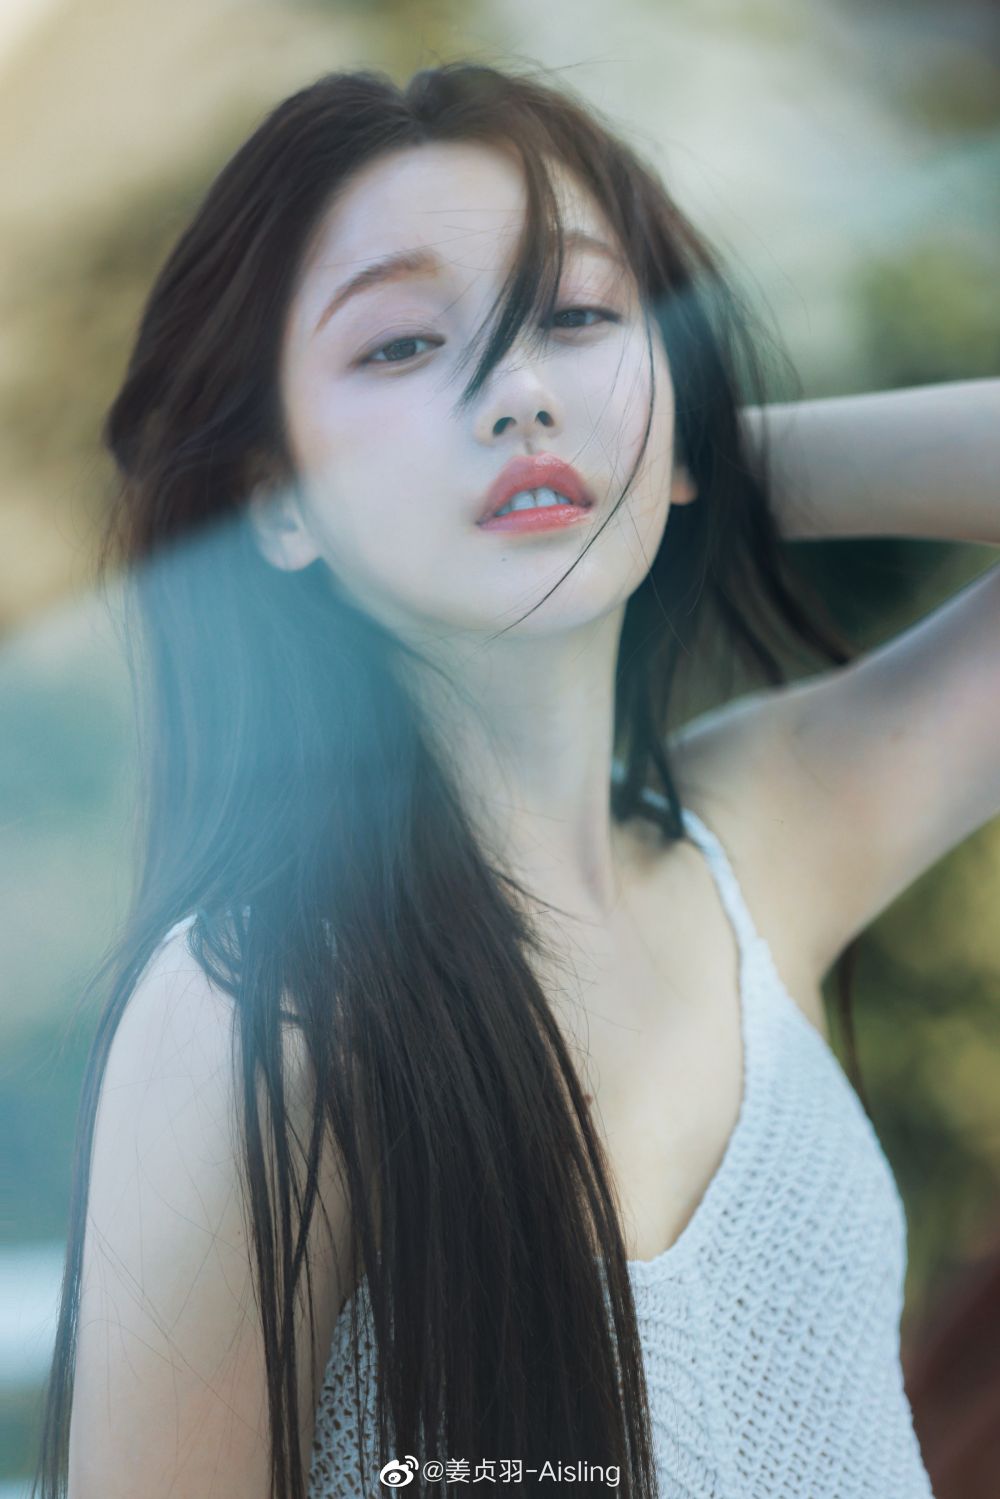 Zhenyu Jiang Sexy and Hottest Photos , Latest Pics